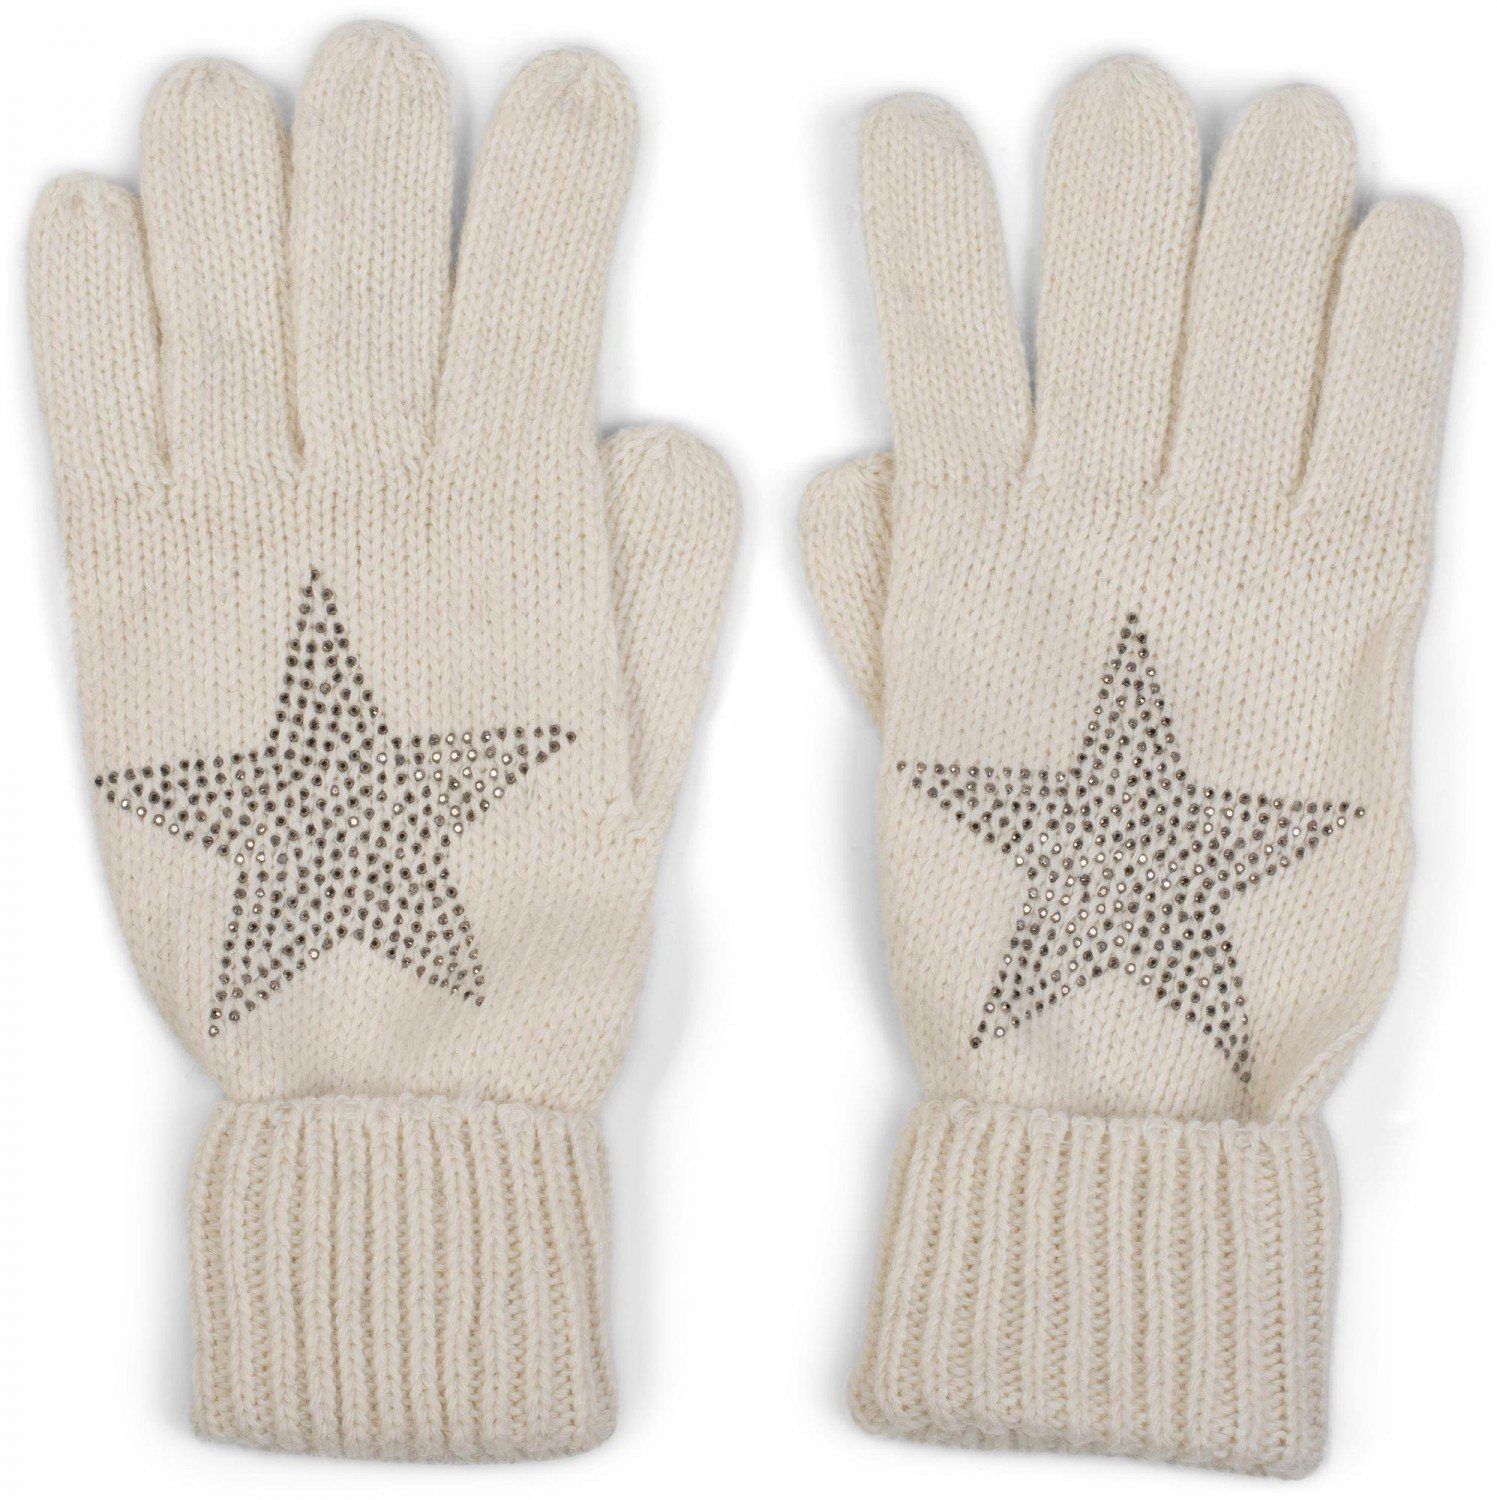 styleBREAKER Strickhandschuhe Strick Handschuhe mit Strass Stern Creme-Weiß